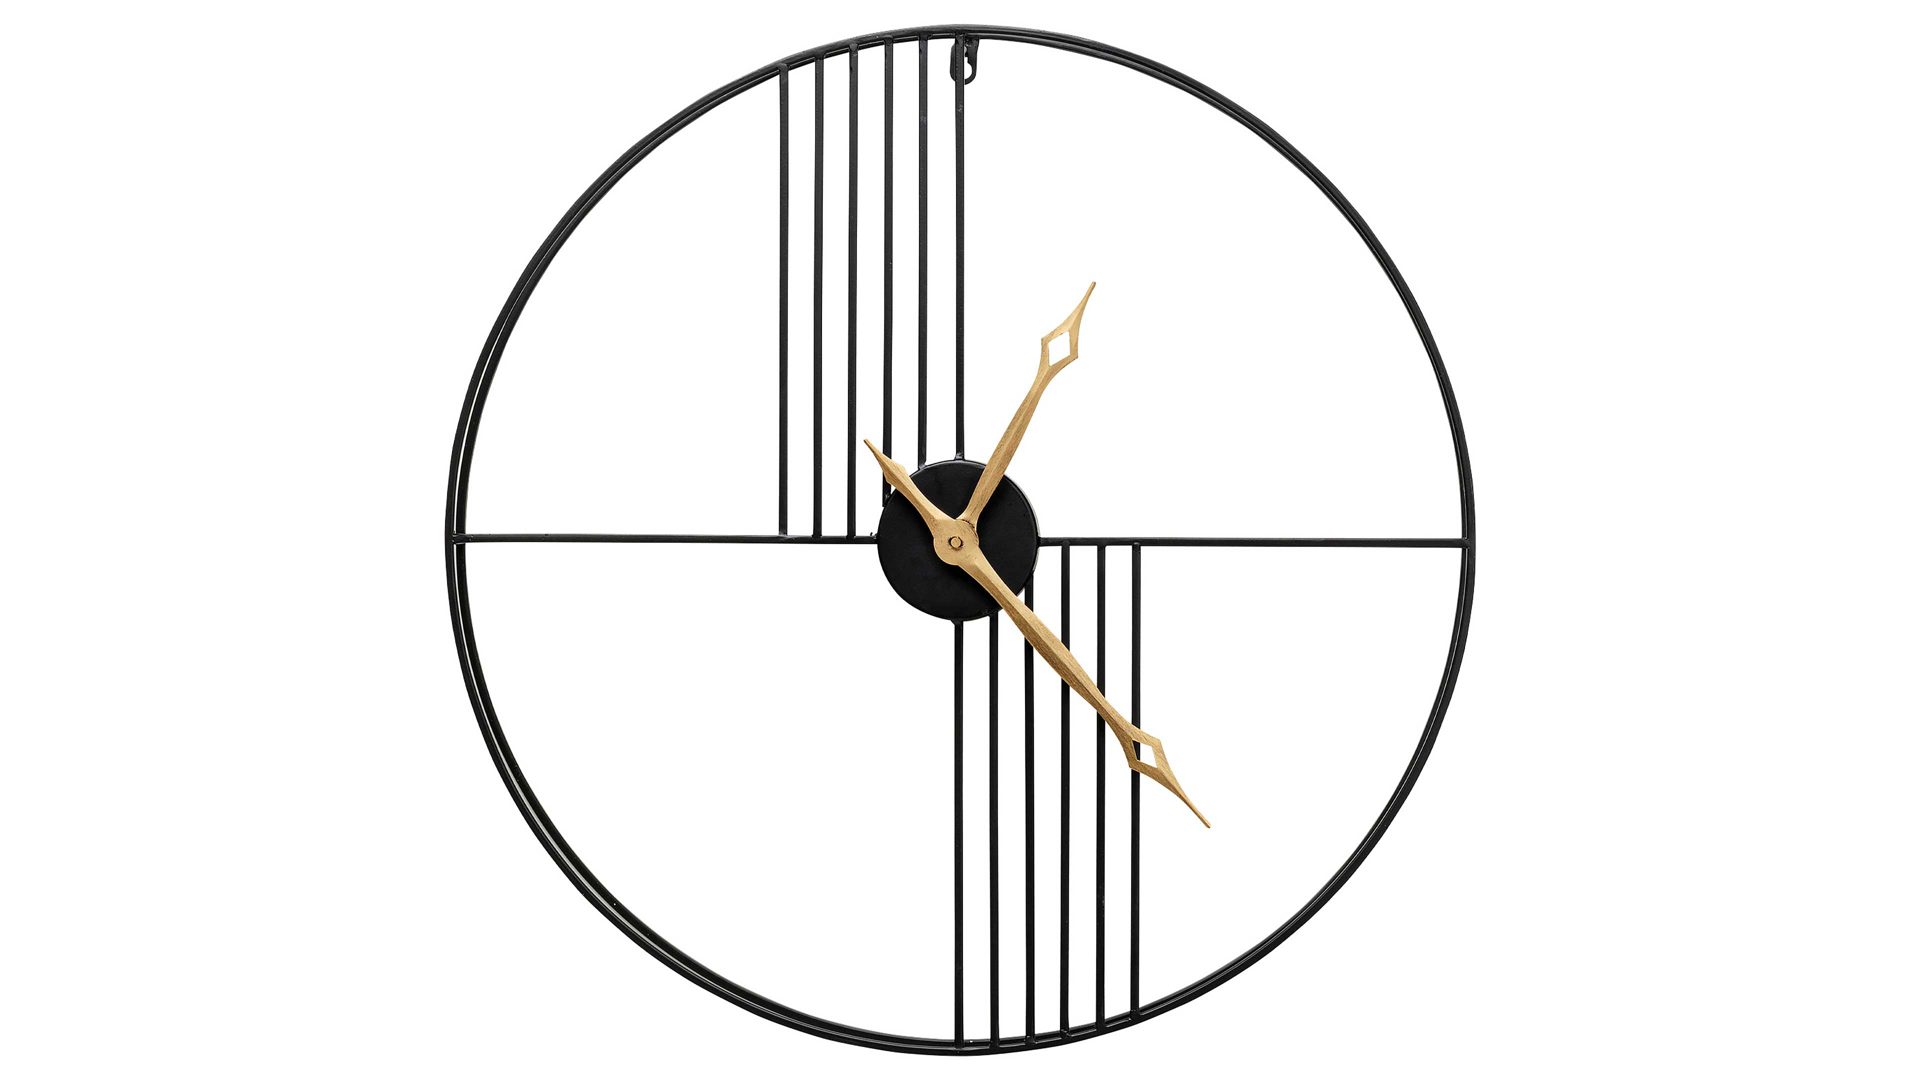 Wanduhr Kare design aus Metall in Schwarz KARE DESIGN Wanduhr Strings Schwarz & Gold - Durchmesser ca. 60 cm